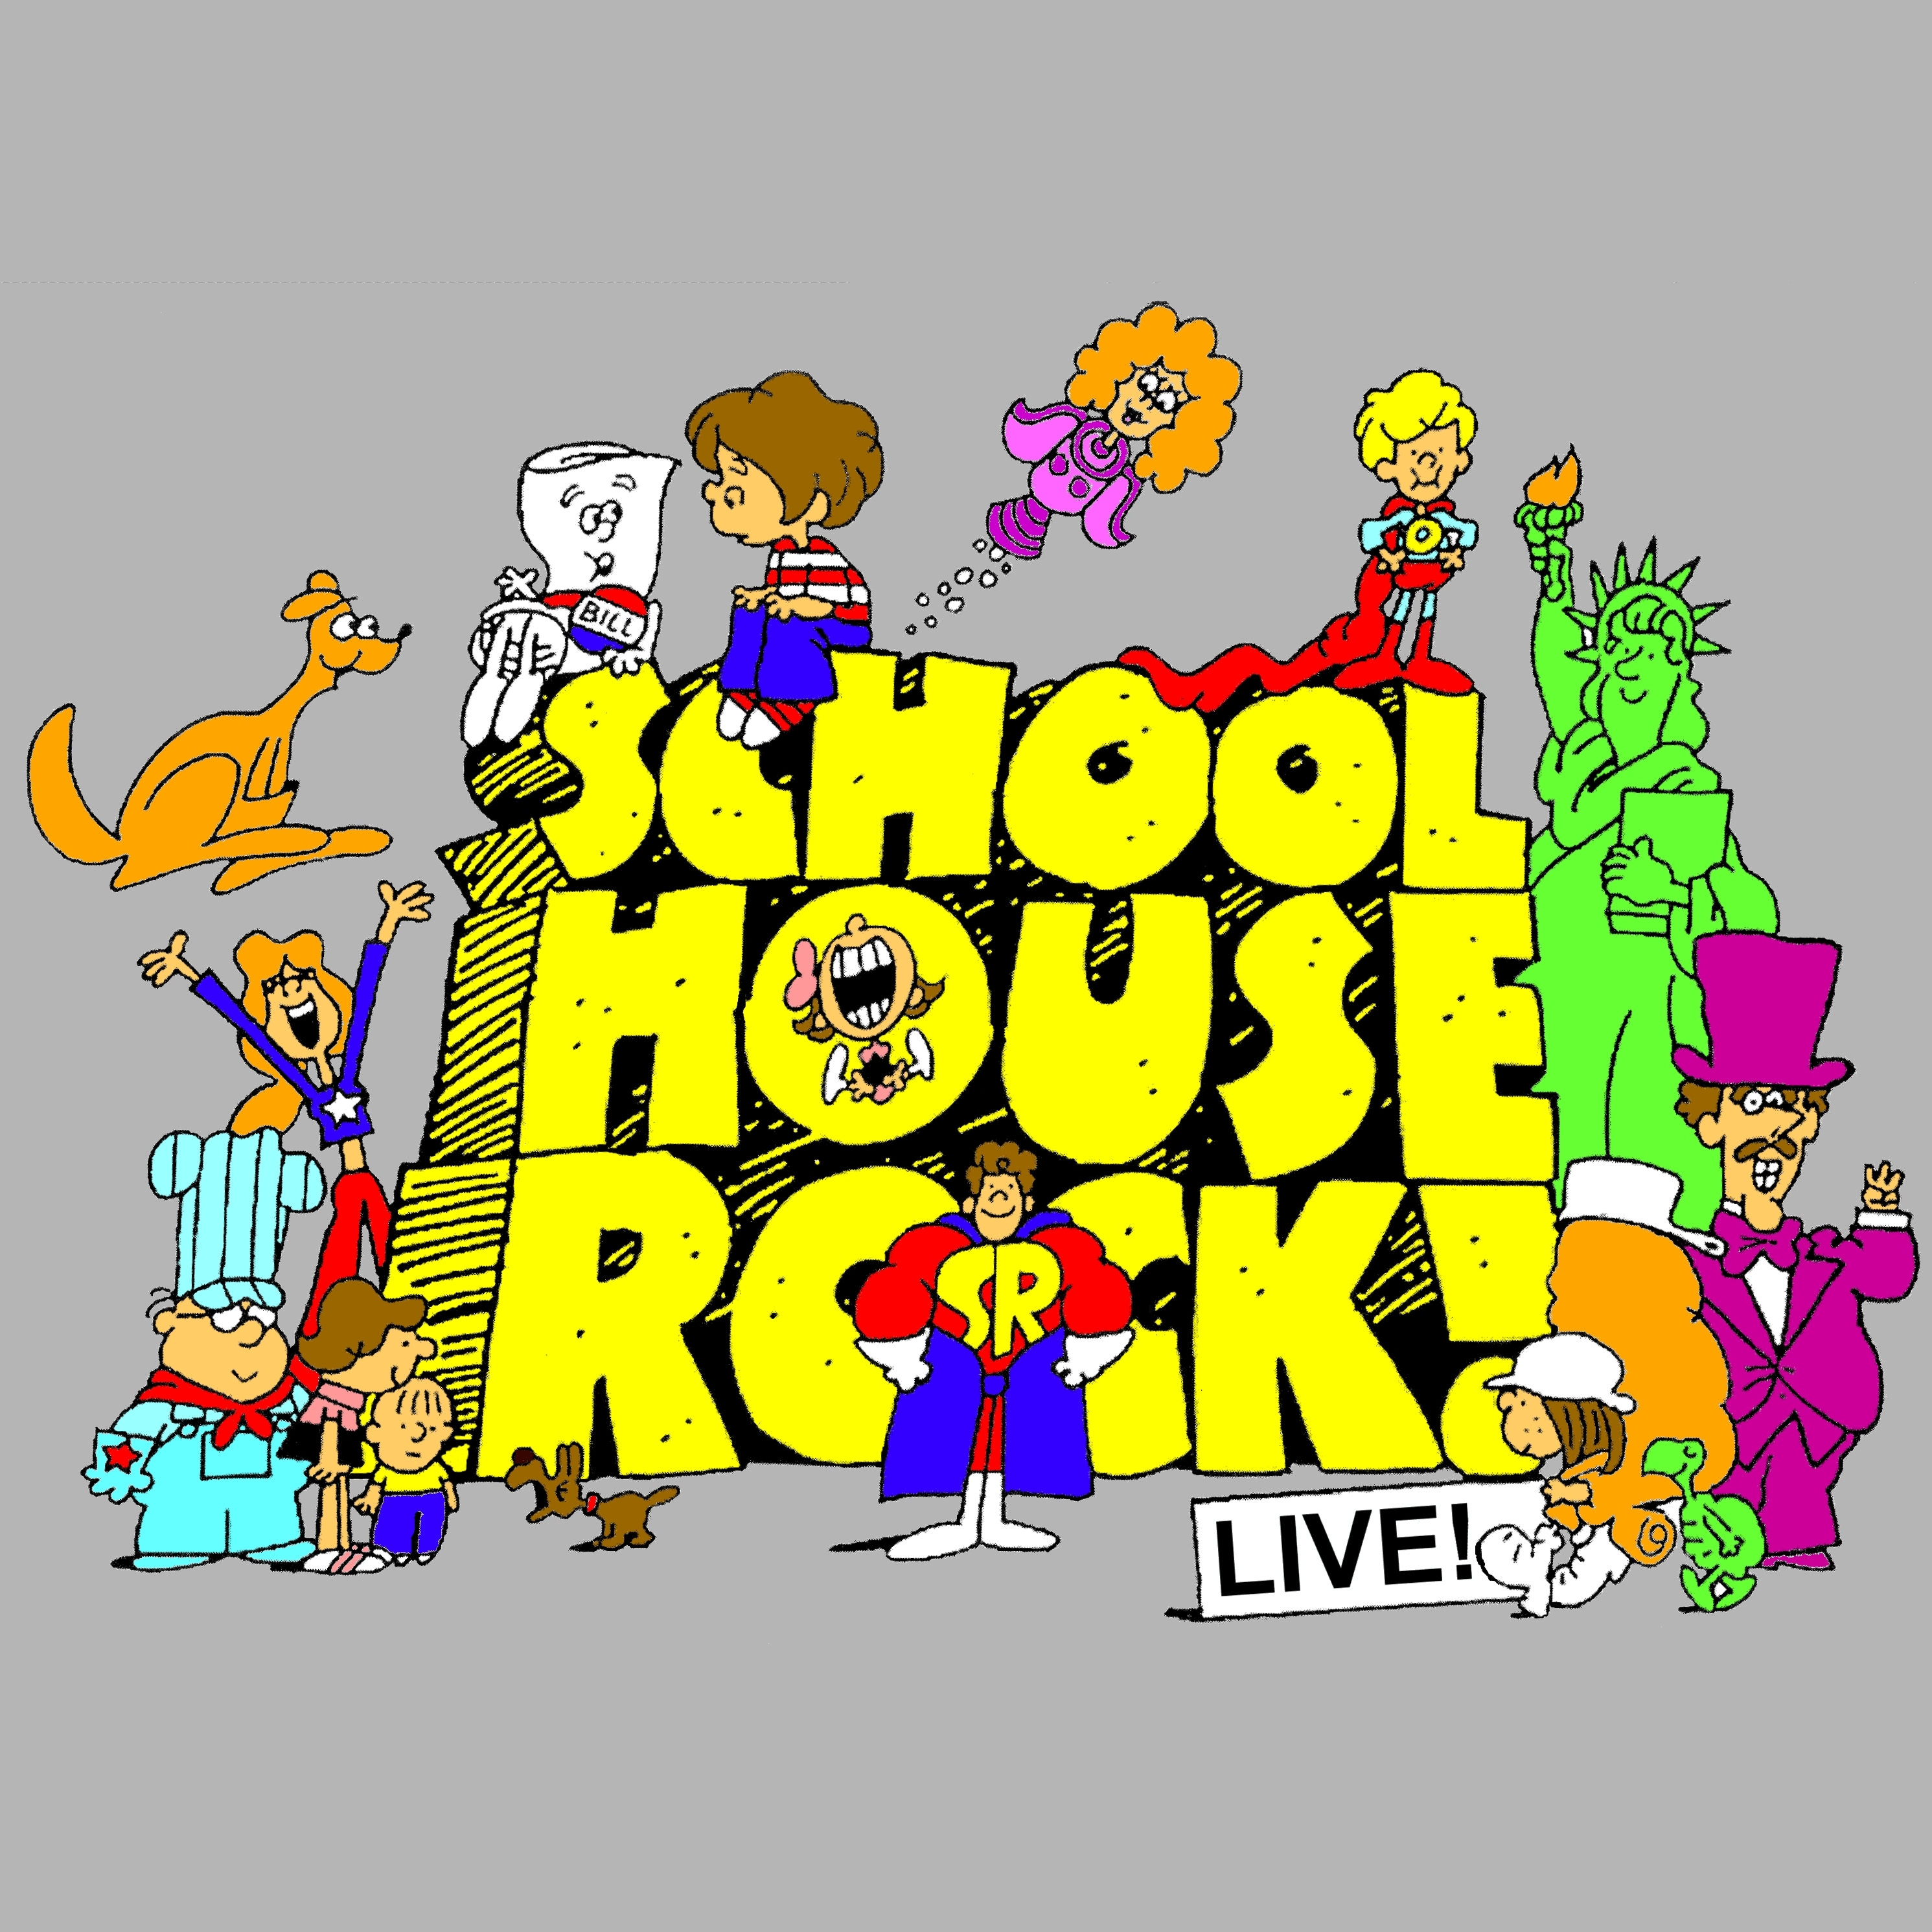 schoolhouse rock live